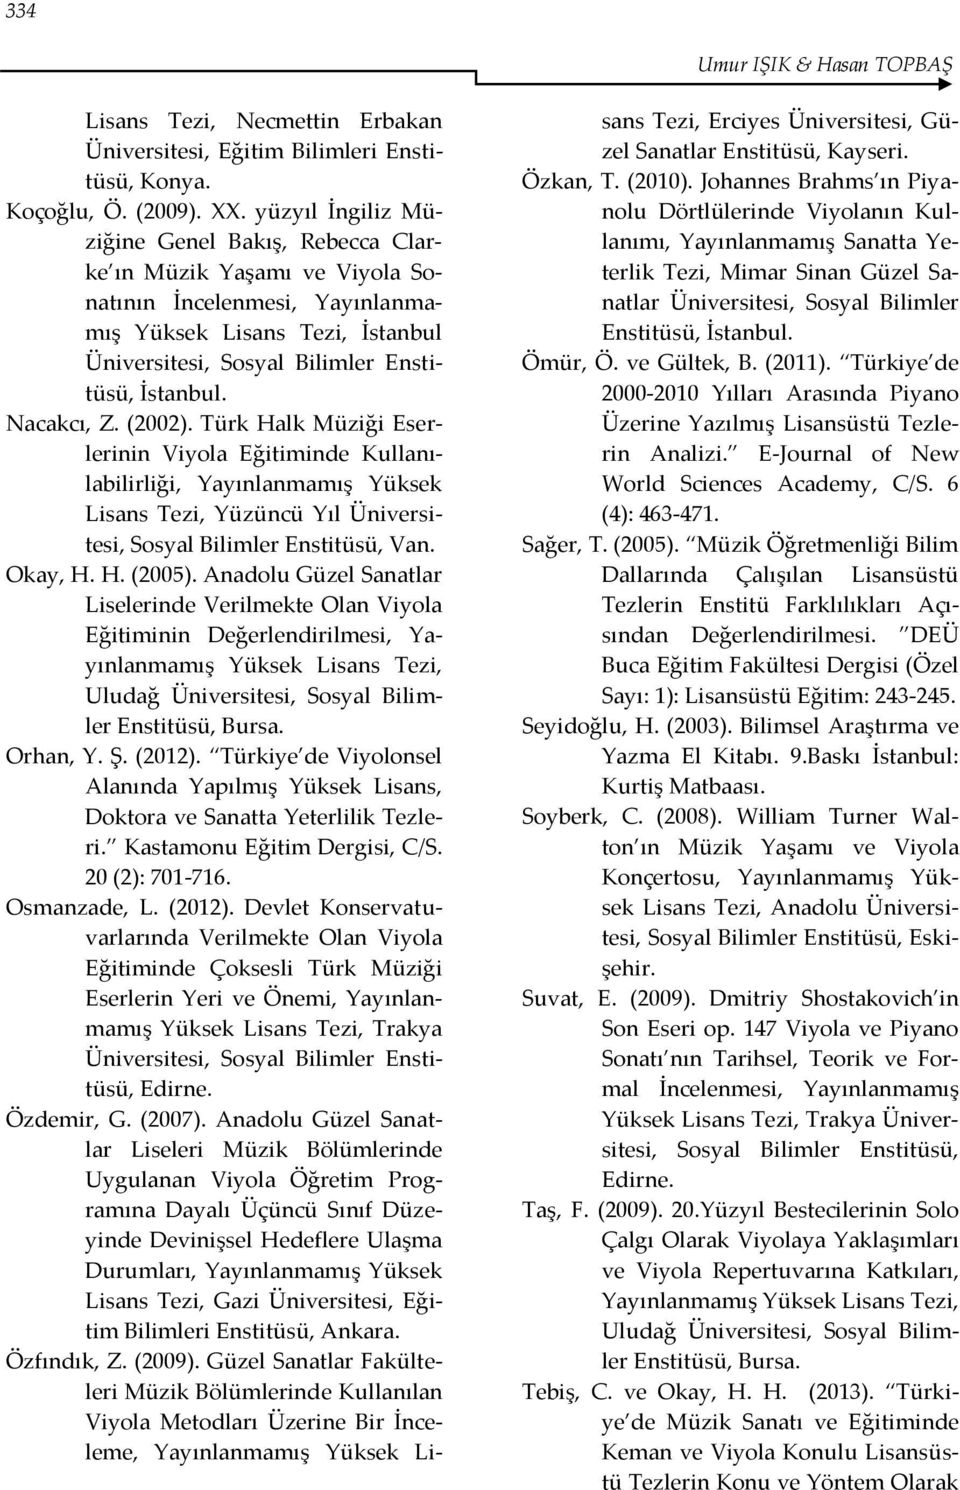 Nacakcı, Z. (2002). Türk Halk Müziği Eserlerinin Viyola Eğitiminde Kullanılabilirliği, Yayınlanmamış Yüksek Lisans Tezi, Yüzüncü Yıl Üniversitesi, Sosyal Bilimler Enstitüsü, Van. Okay, H. H. (2005).